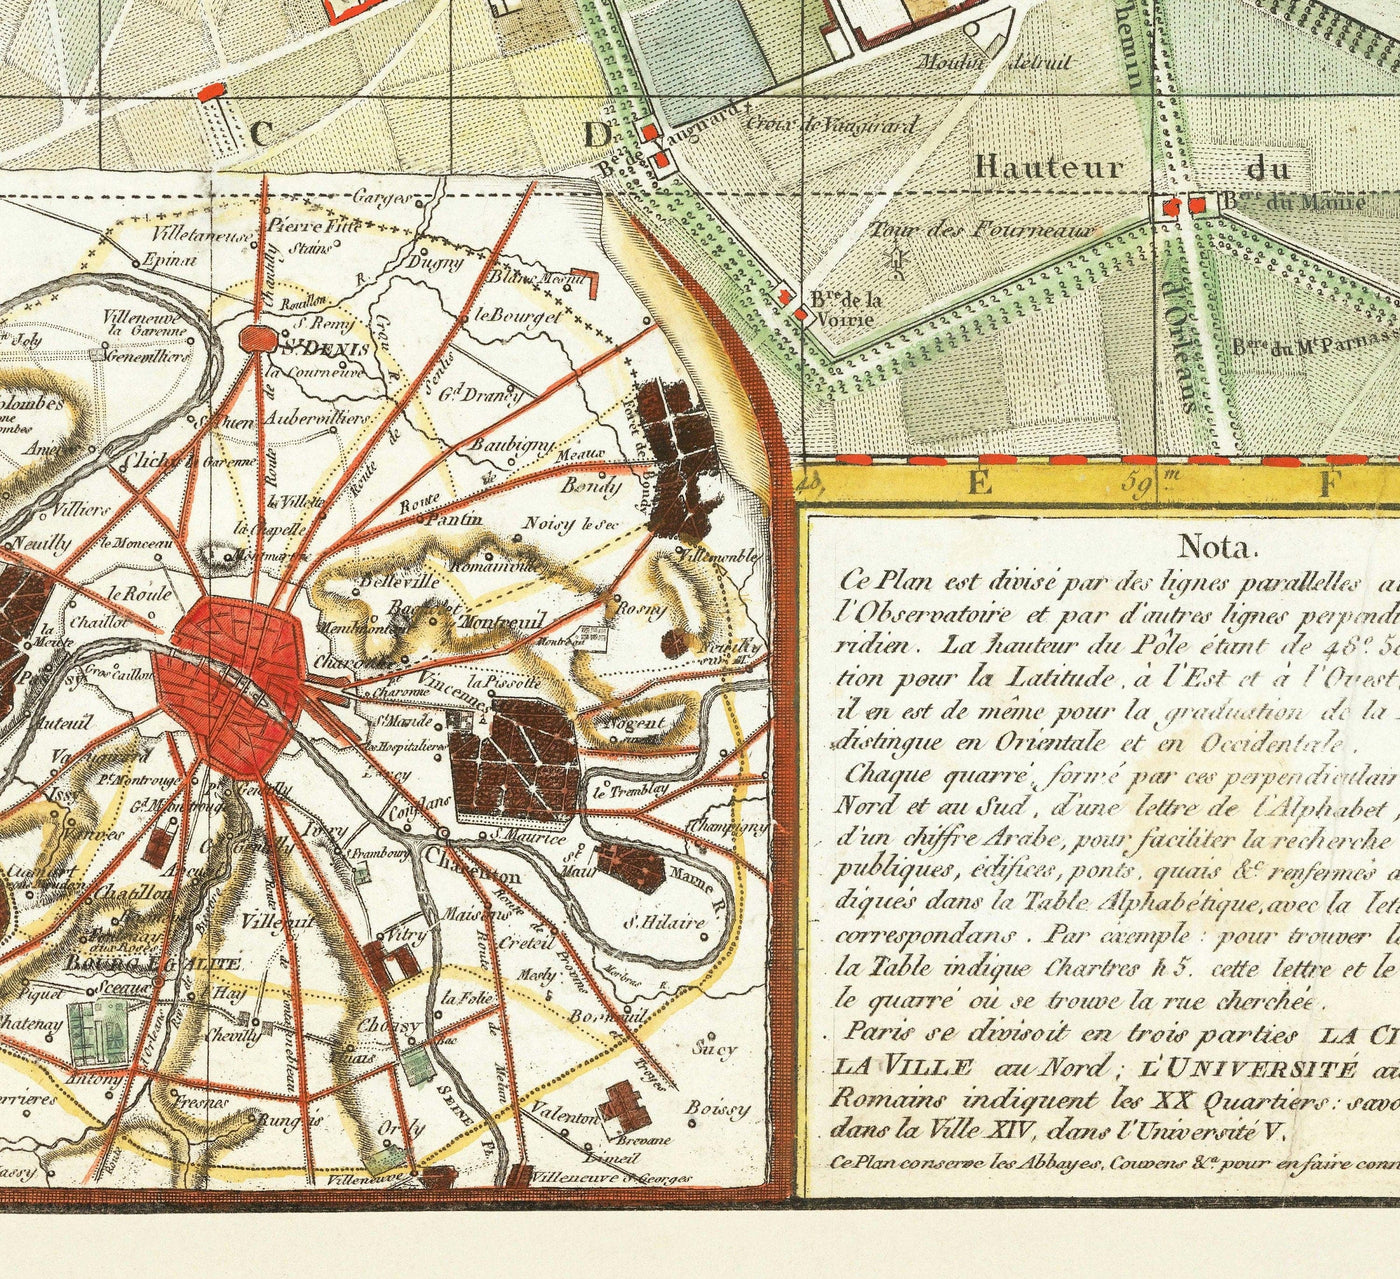 Ancienne carte de Paris, France de Delamarche en 1797 - Louvre, Notre-Dame, Sainte-Chapelle, Seine, Révolution, Invalides